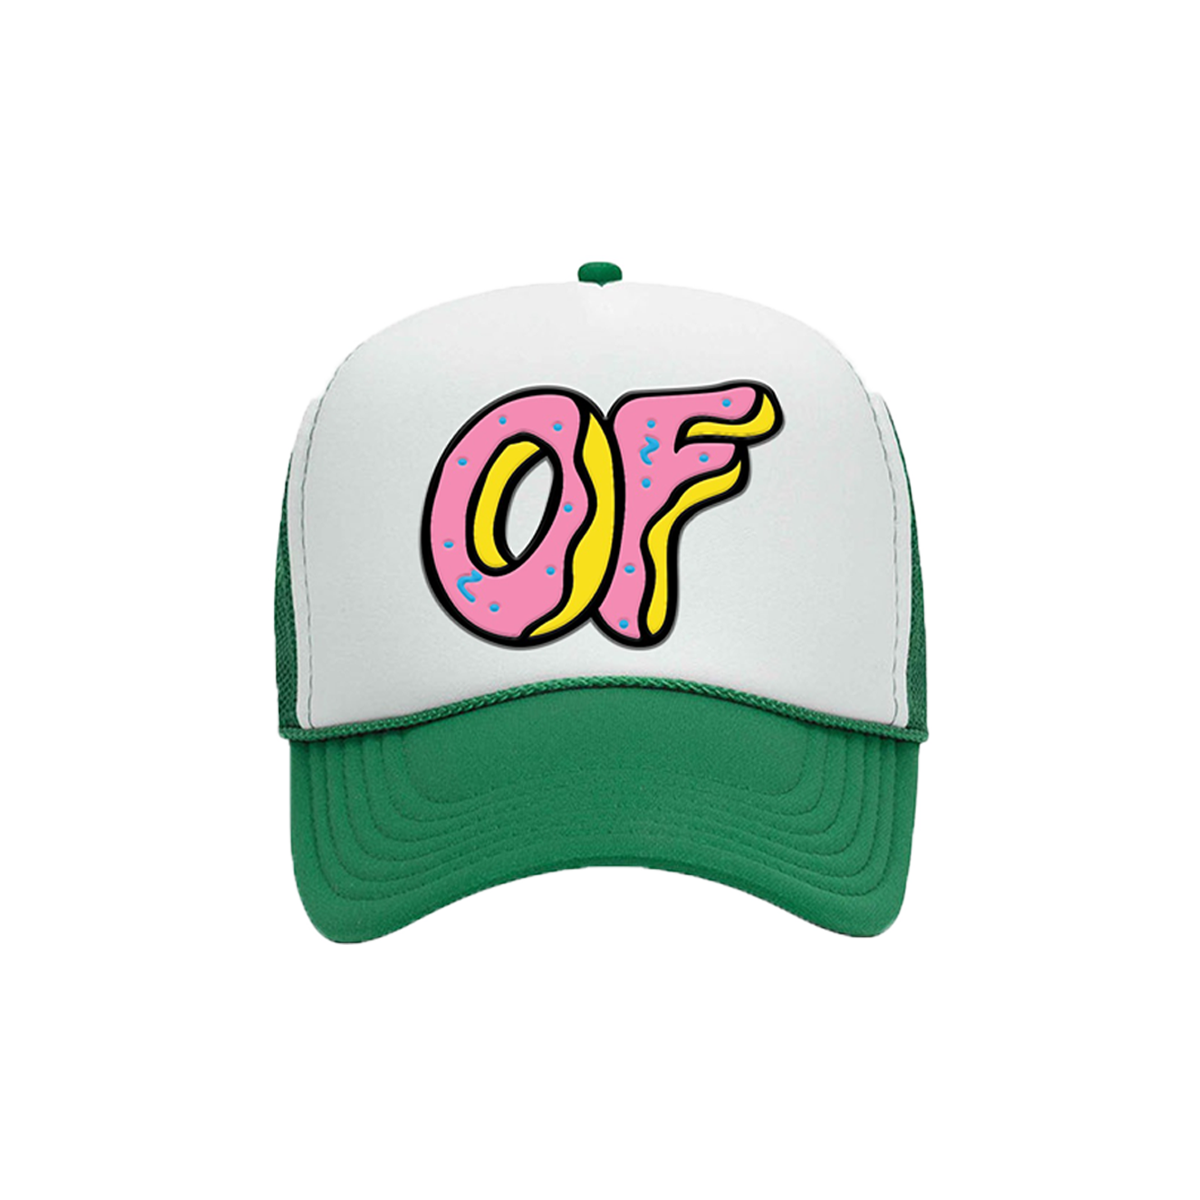 OF Trucker Hat - Green